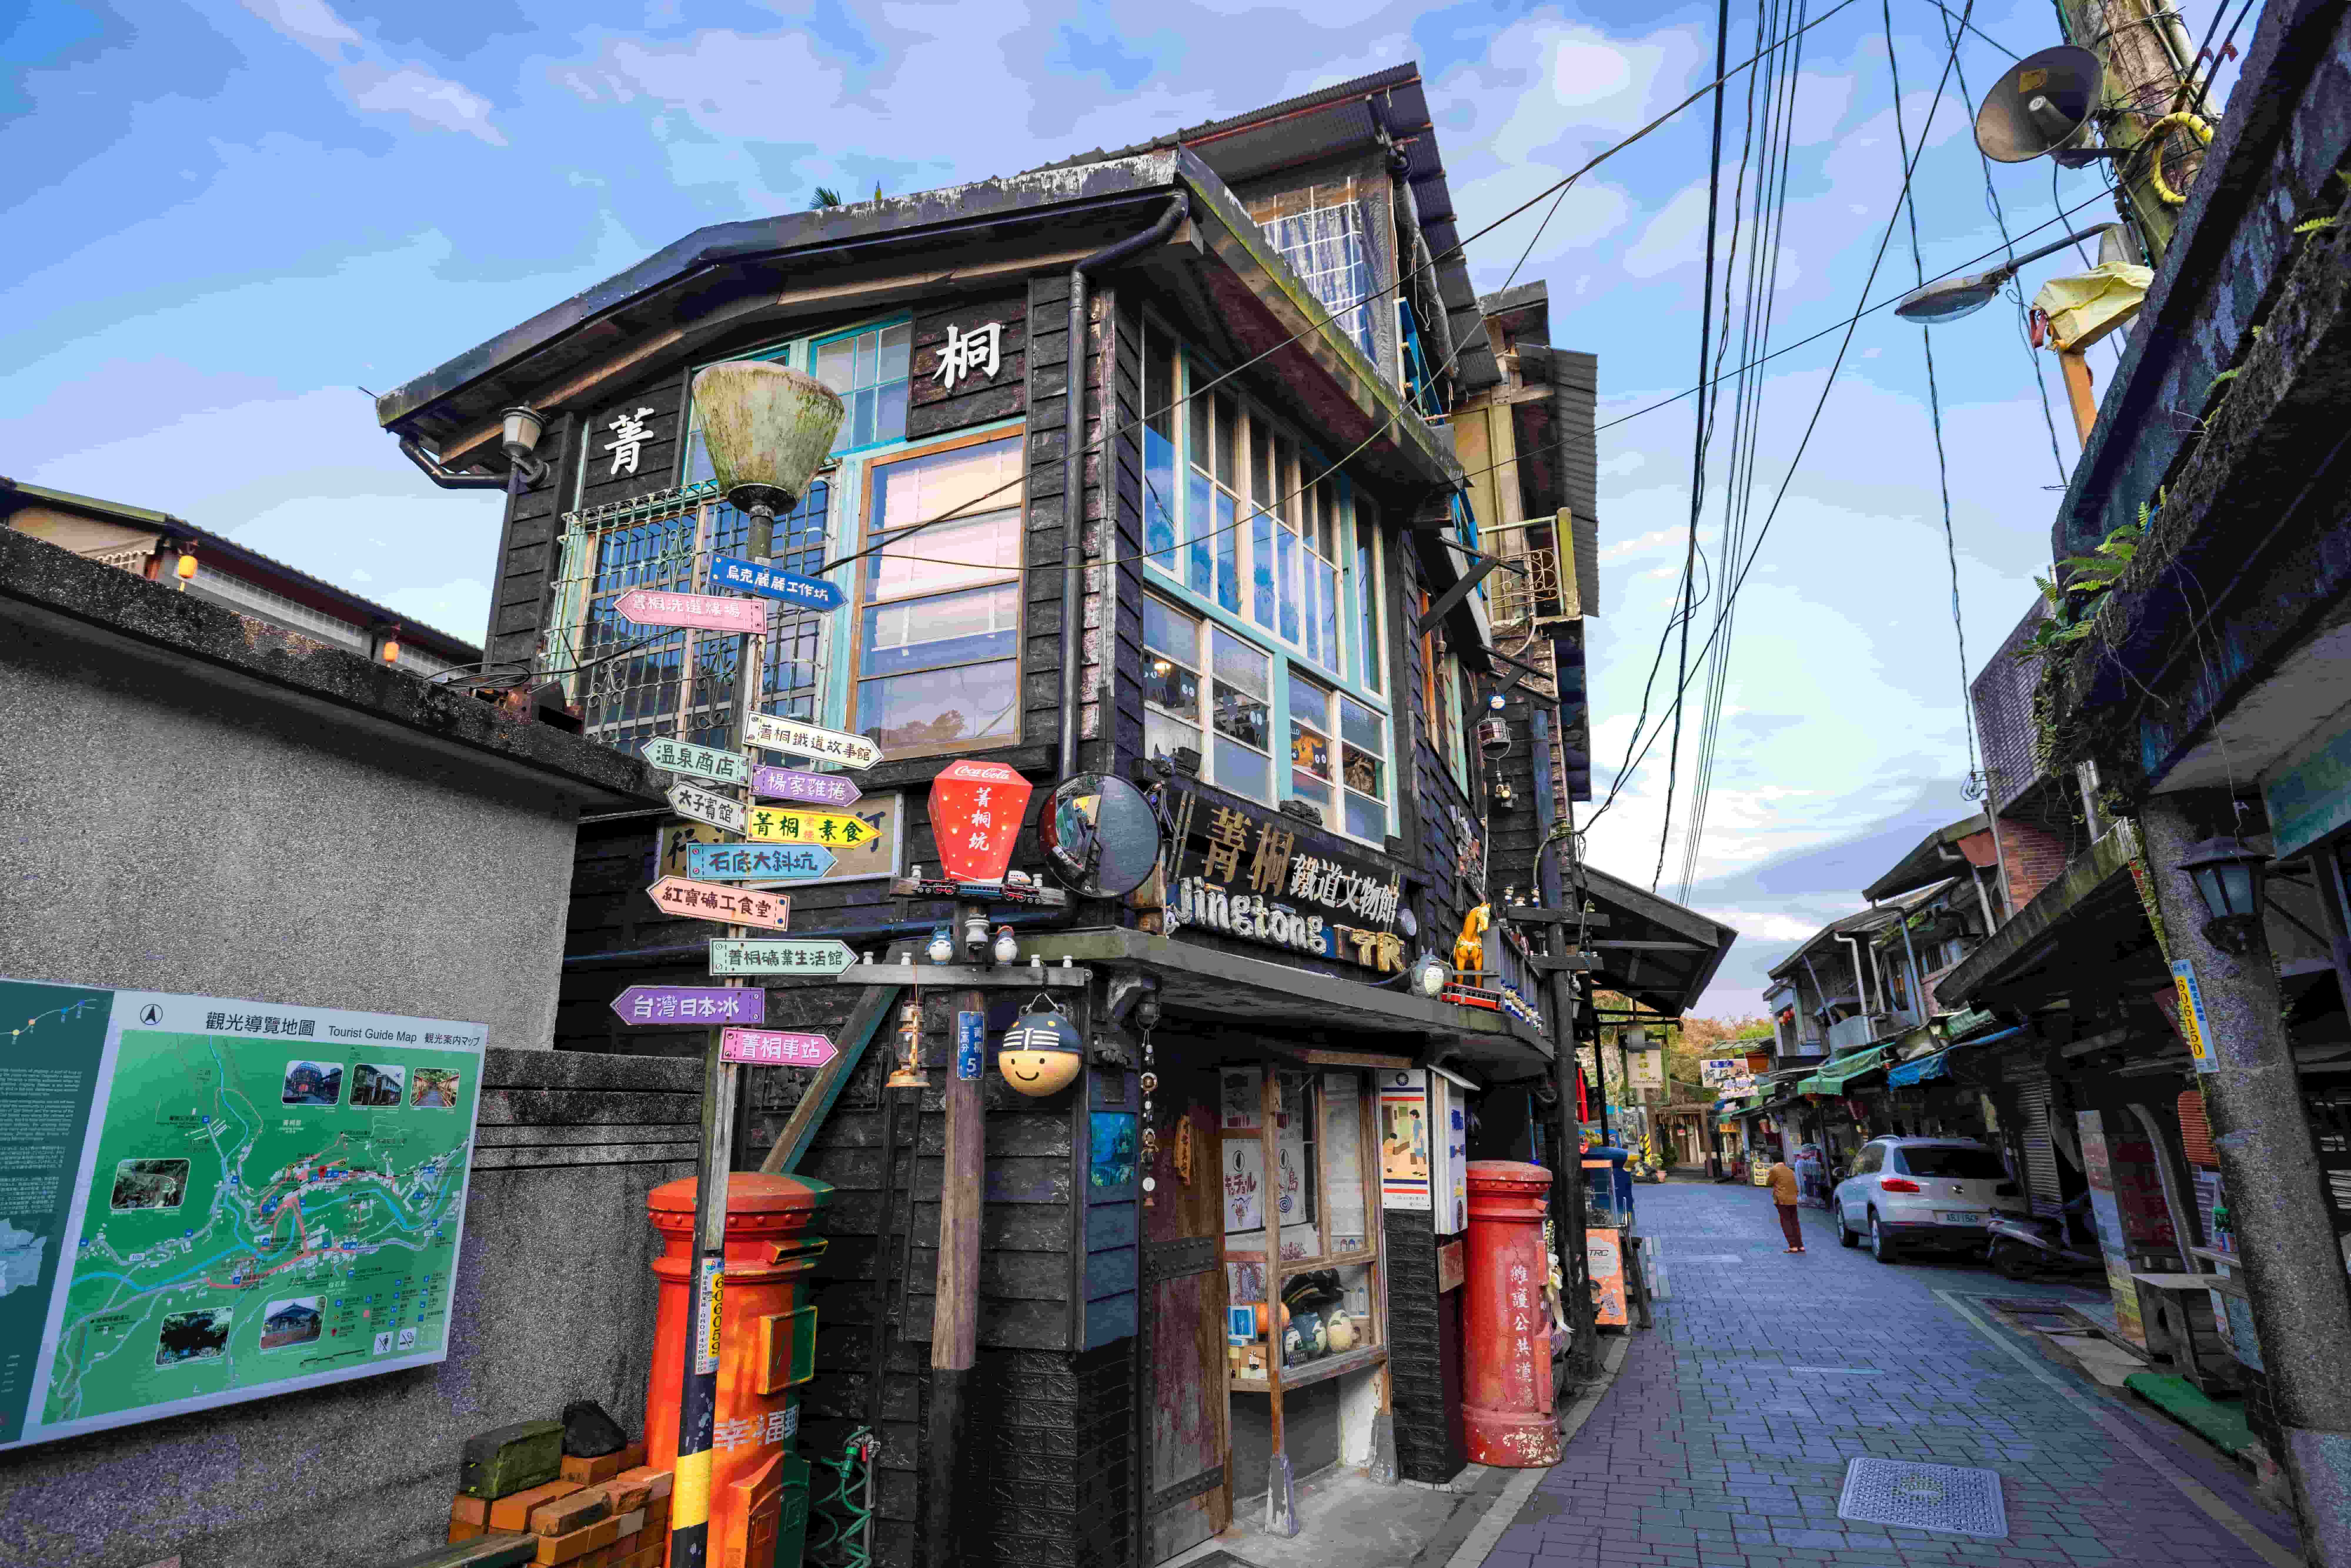 菁桐車站旁純樸的菁桐老街中有許多古色古香的精緻小店